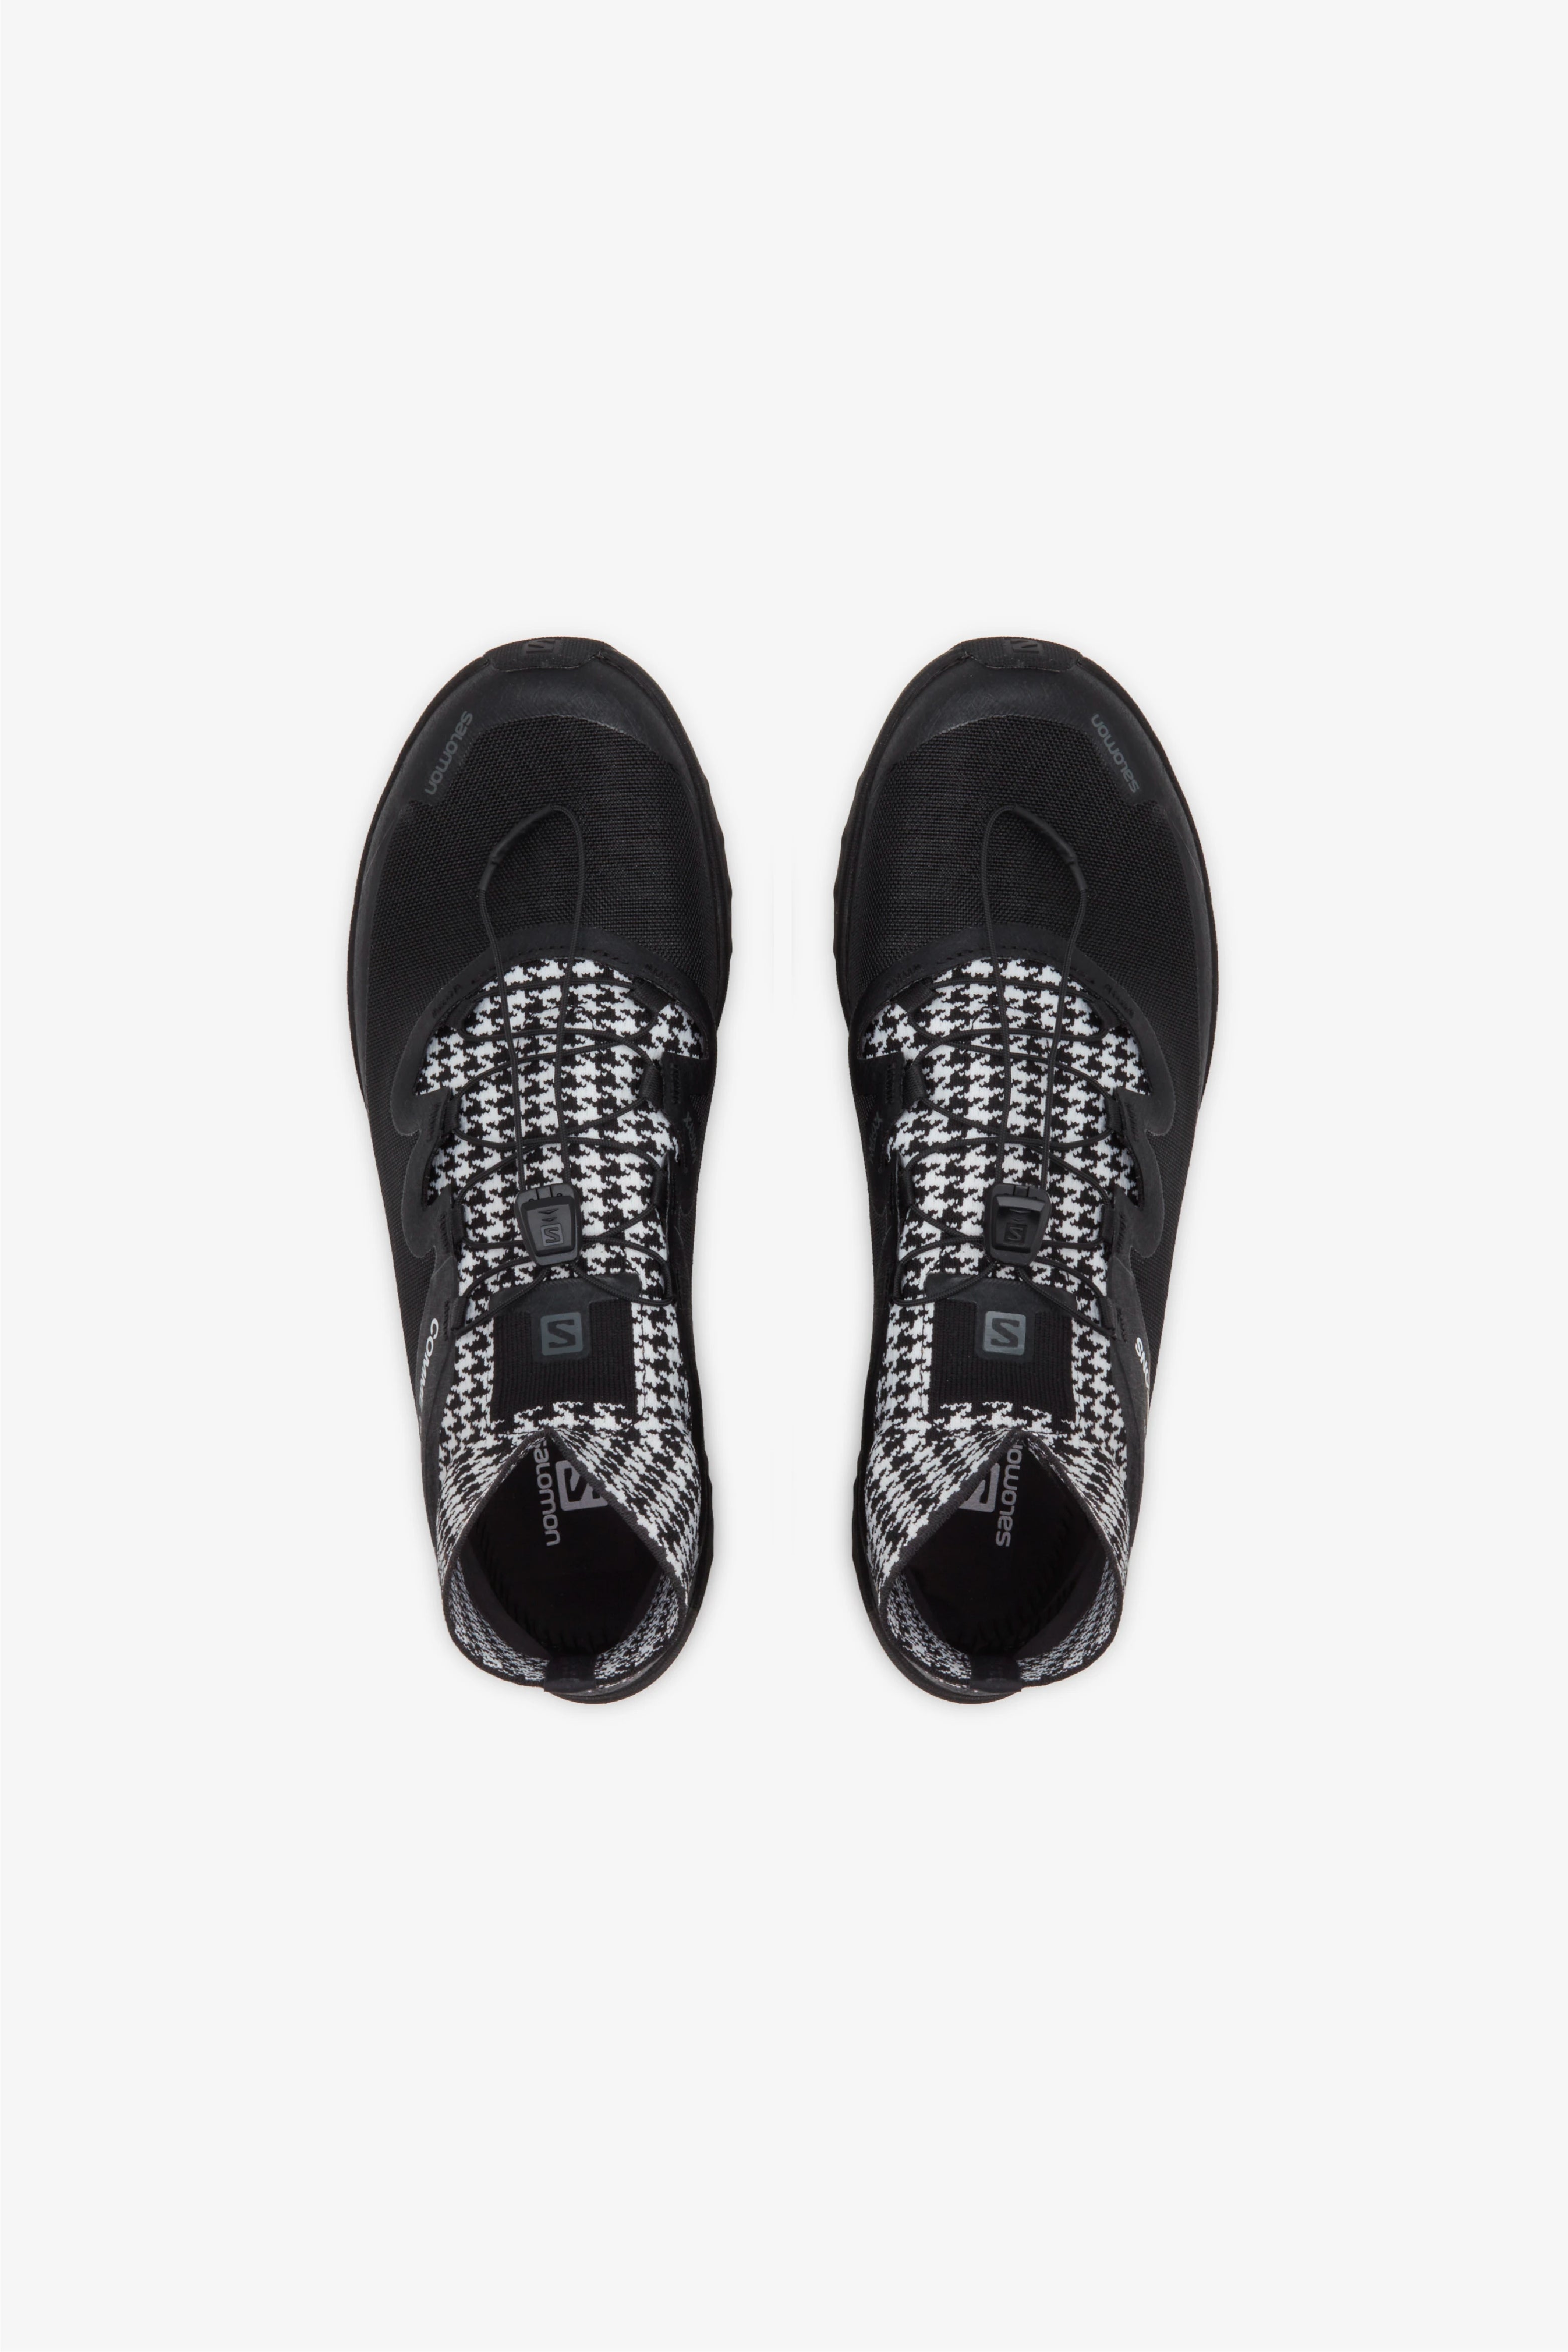 Selectshop FRAME - COMME DES GARÇONS Comme des Garçons x Salomon Cross Footwear Dubai